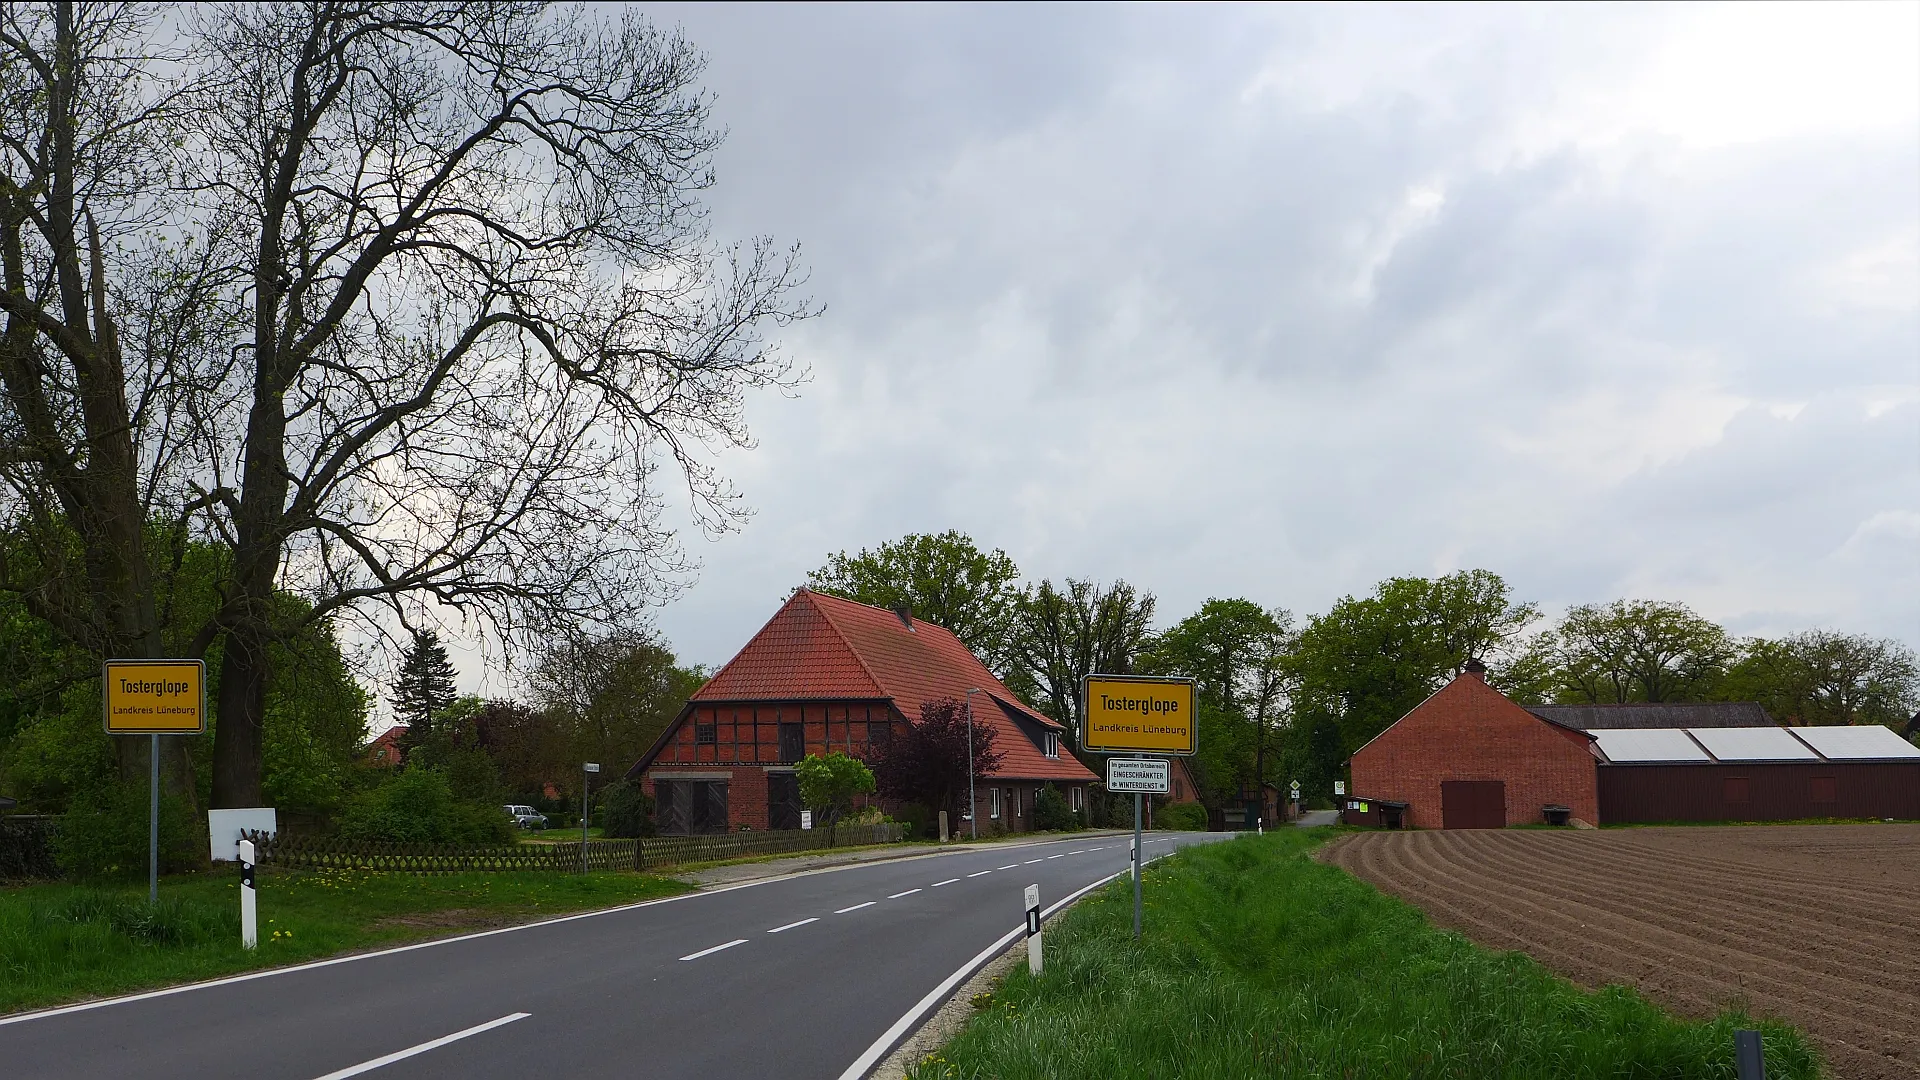 Photo showing: Ortseingangsschilder von Tosterglope im Landkreis Lüneburg.